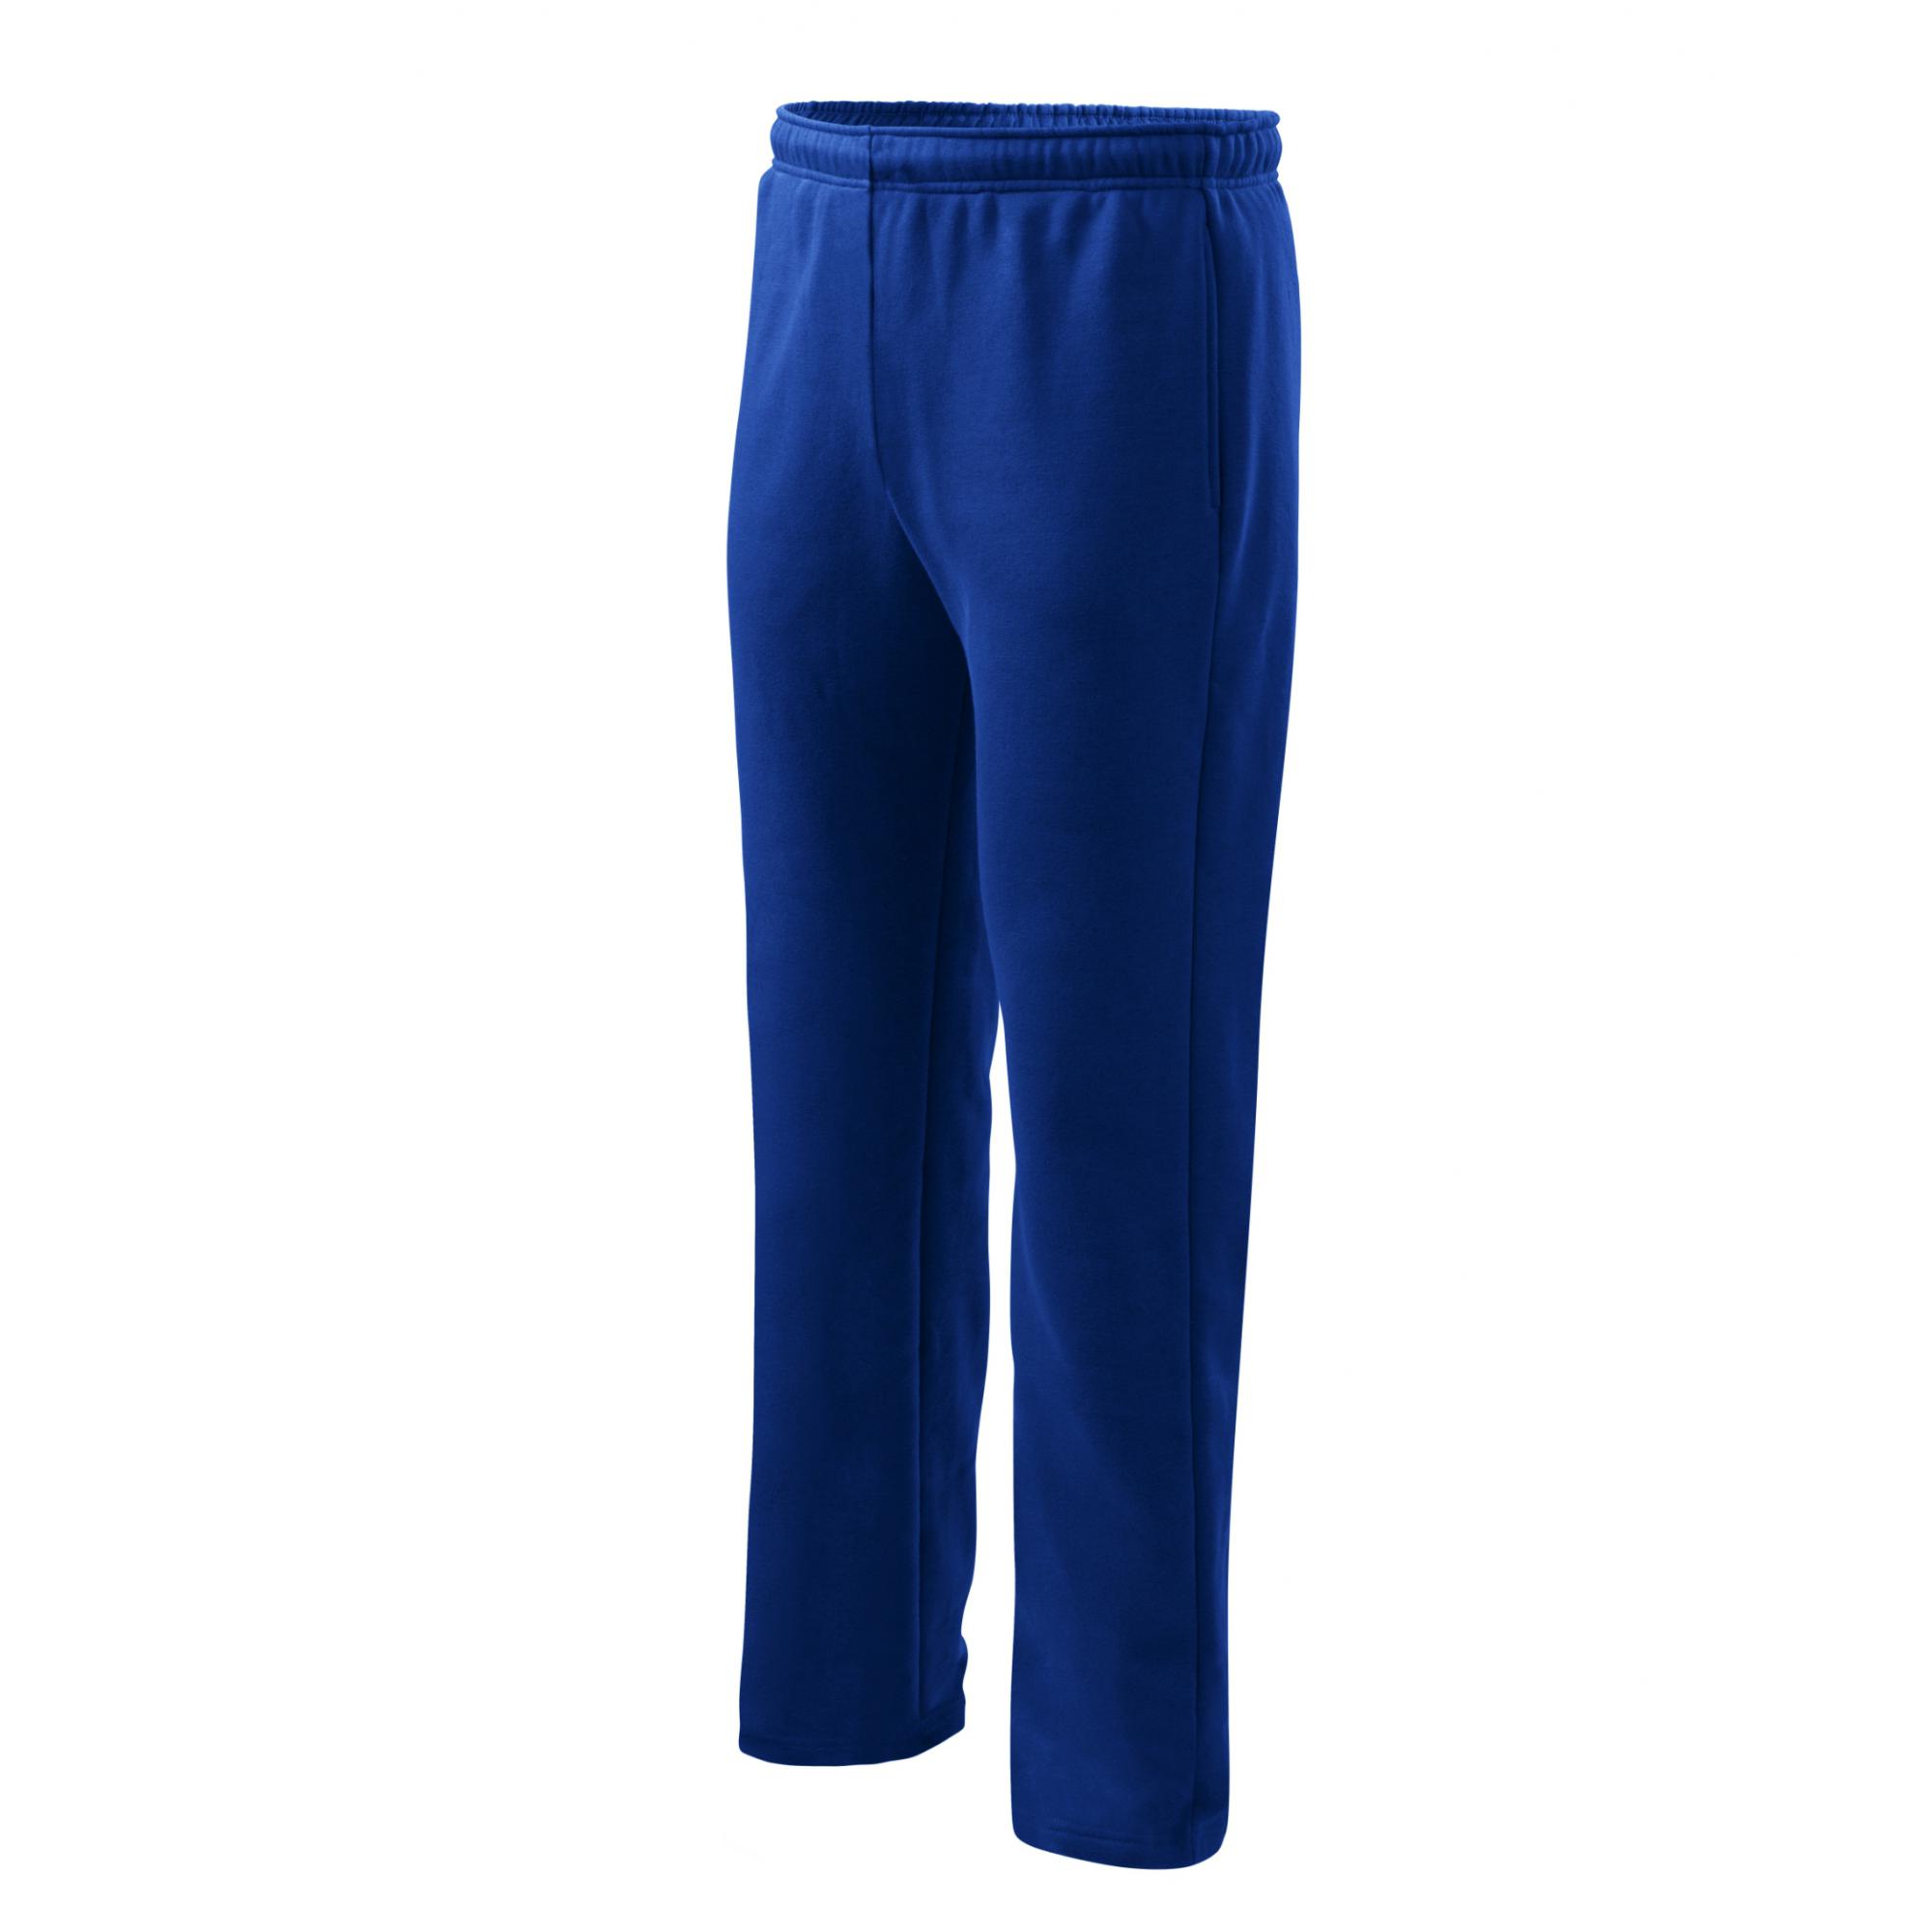 Pantaloni pentru bărbaţi/copii Comfort 607 Albastru regal S